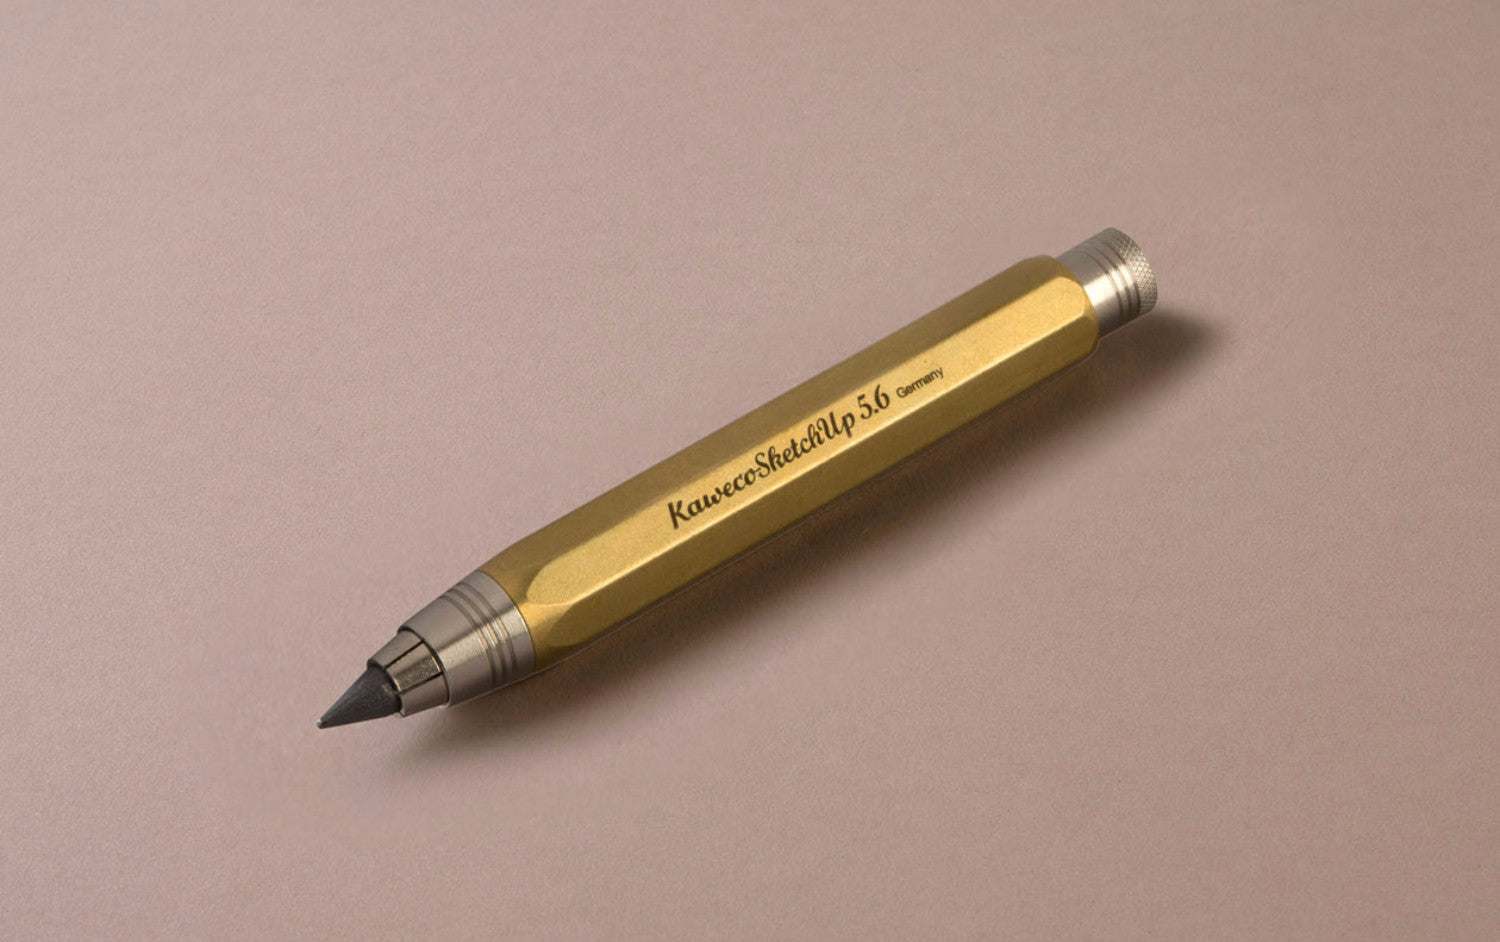 Brass Kaweco Sketch up 5.6mm Clutch Pencil